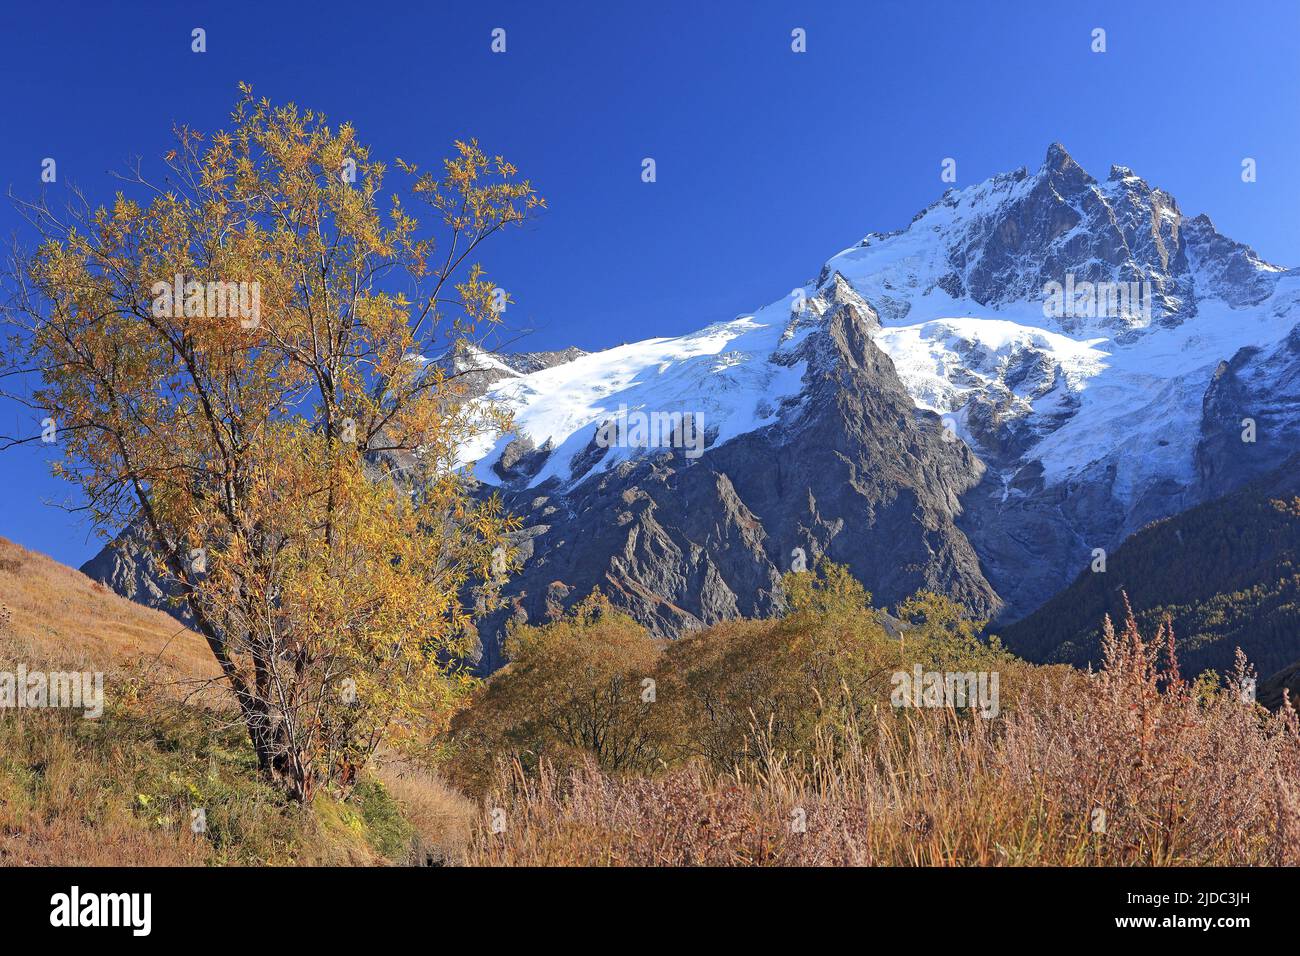 France, Hautes-Alpes La Grave, Meije massif, Ecrins National Park in autumn Stock Photo